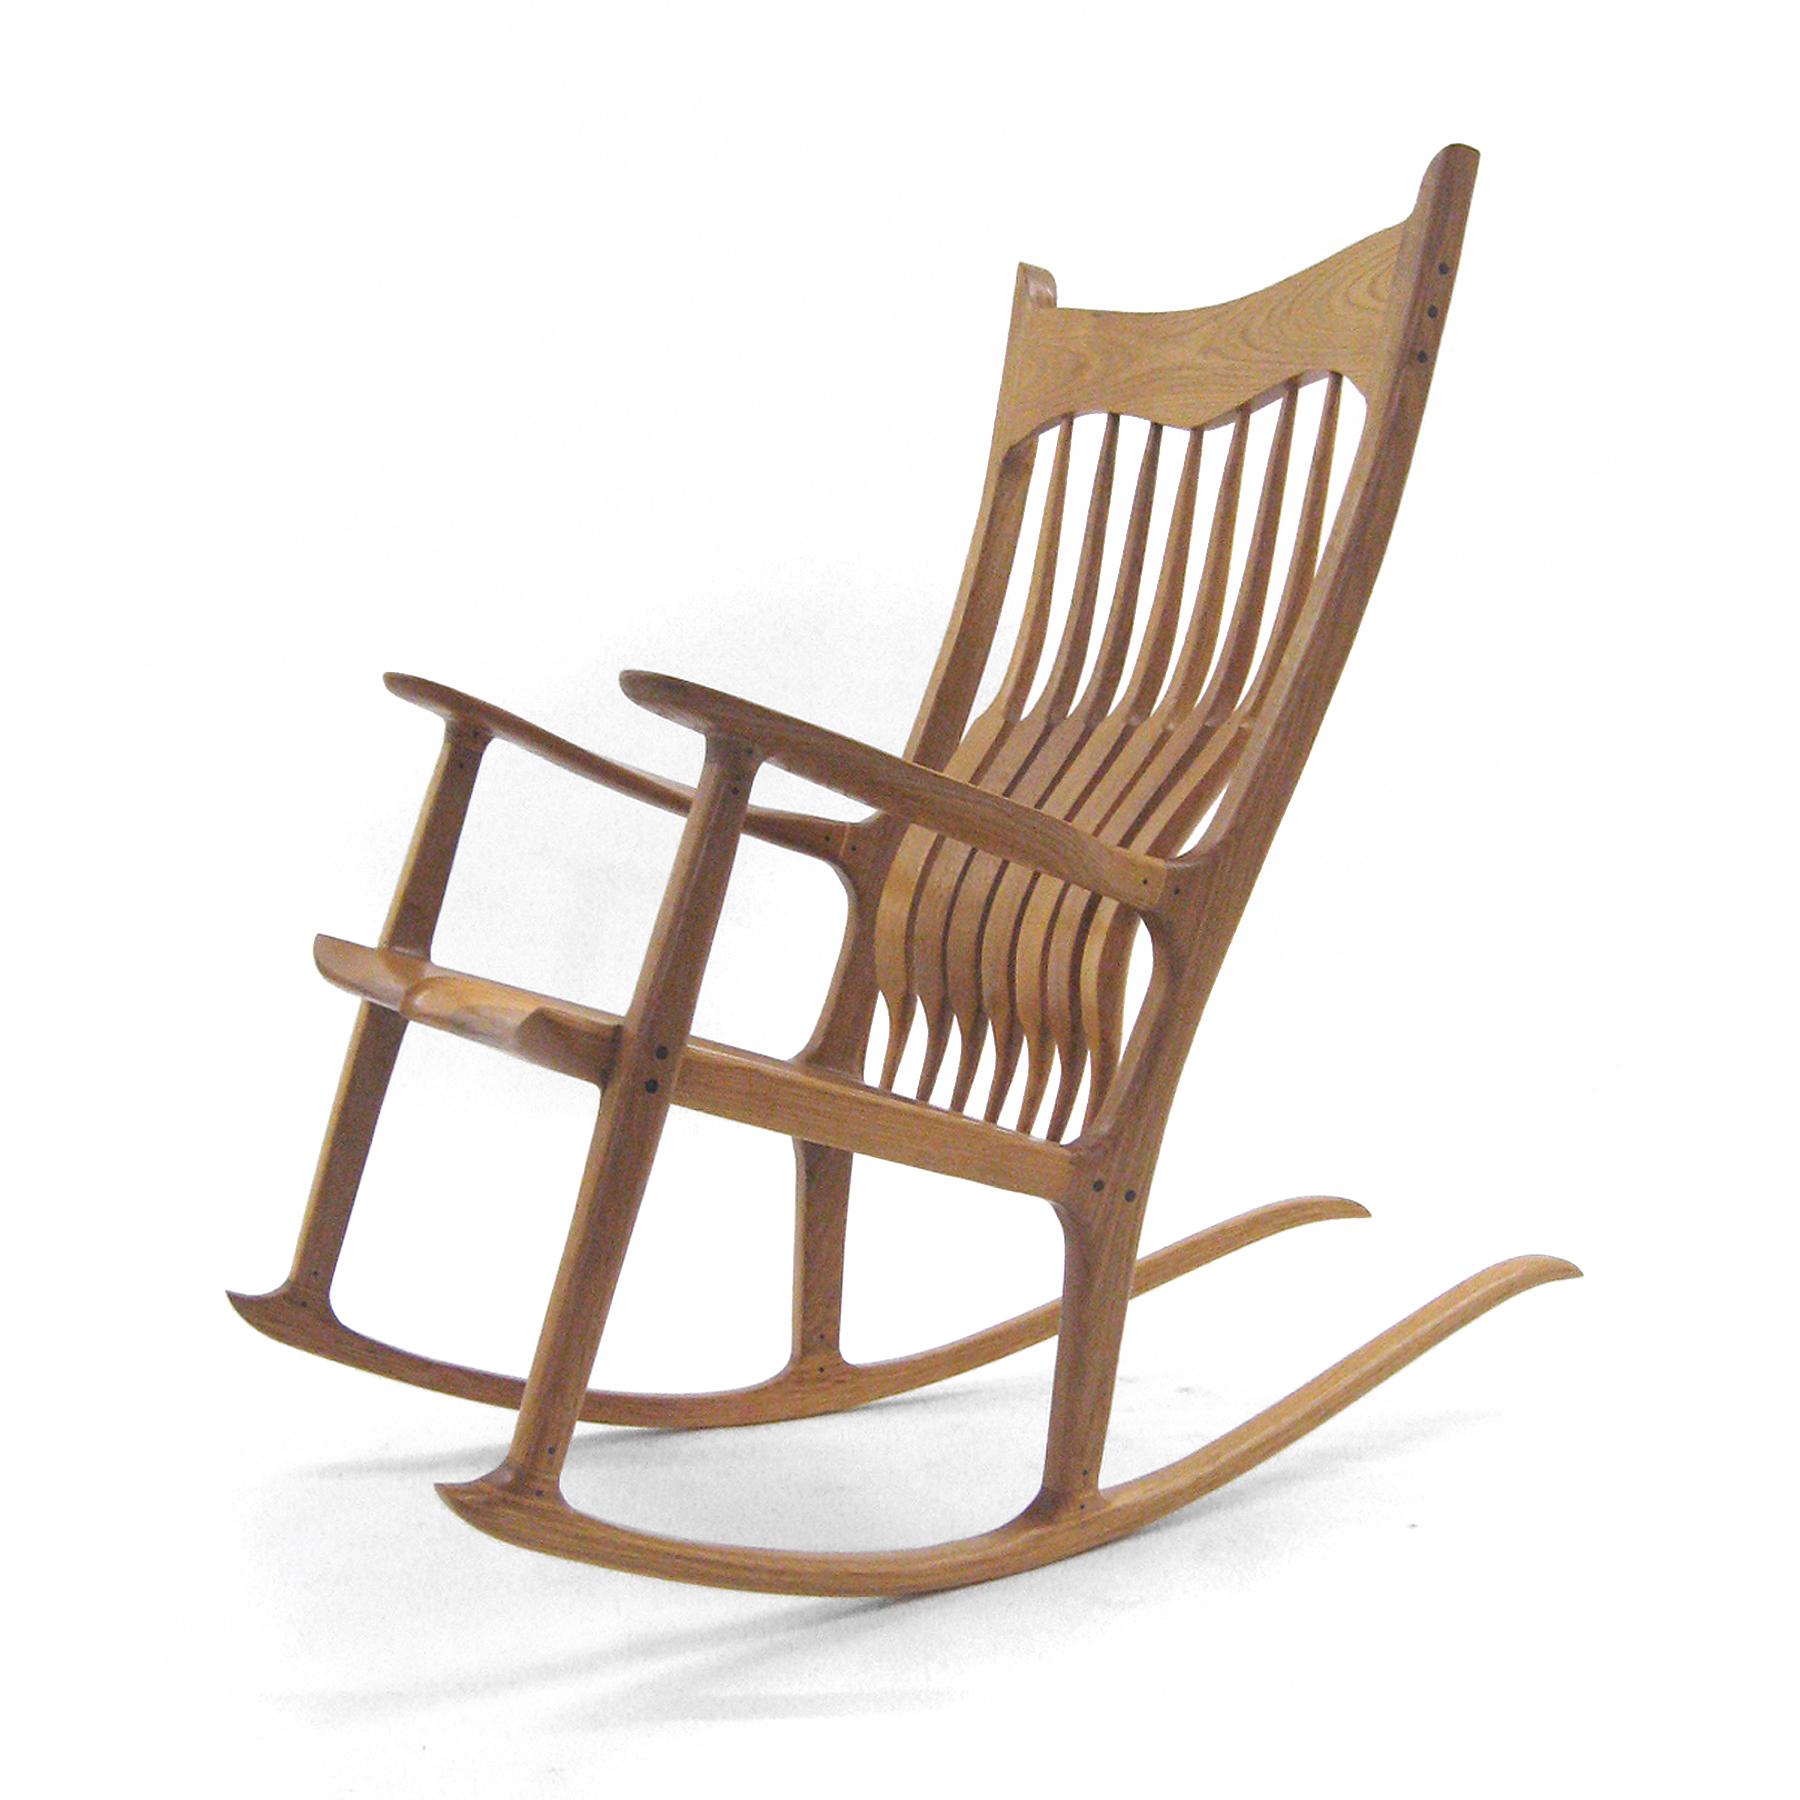 Dieser Schaukelstuhl von Harold Dodson basiert auf dem berühmten Entwurf von Sam Maloof. Die Handwerkskunst ist tadellos und der Komfort, den man beim Sitzen auf dem Stuhl genießt, ist unvergleichlich.